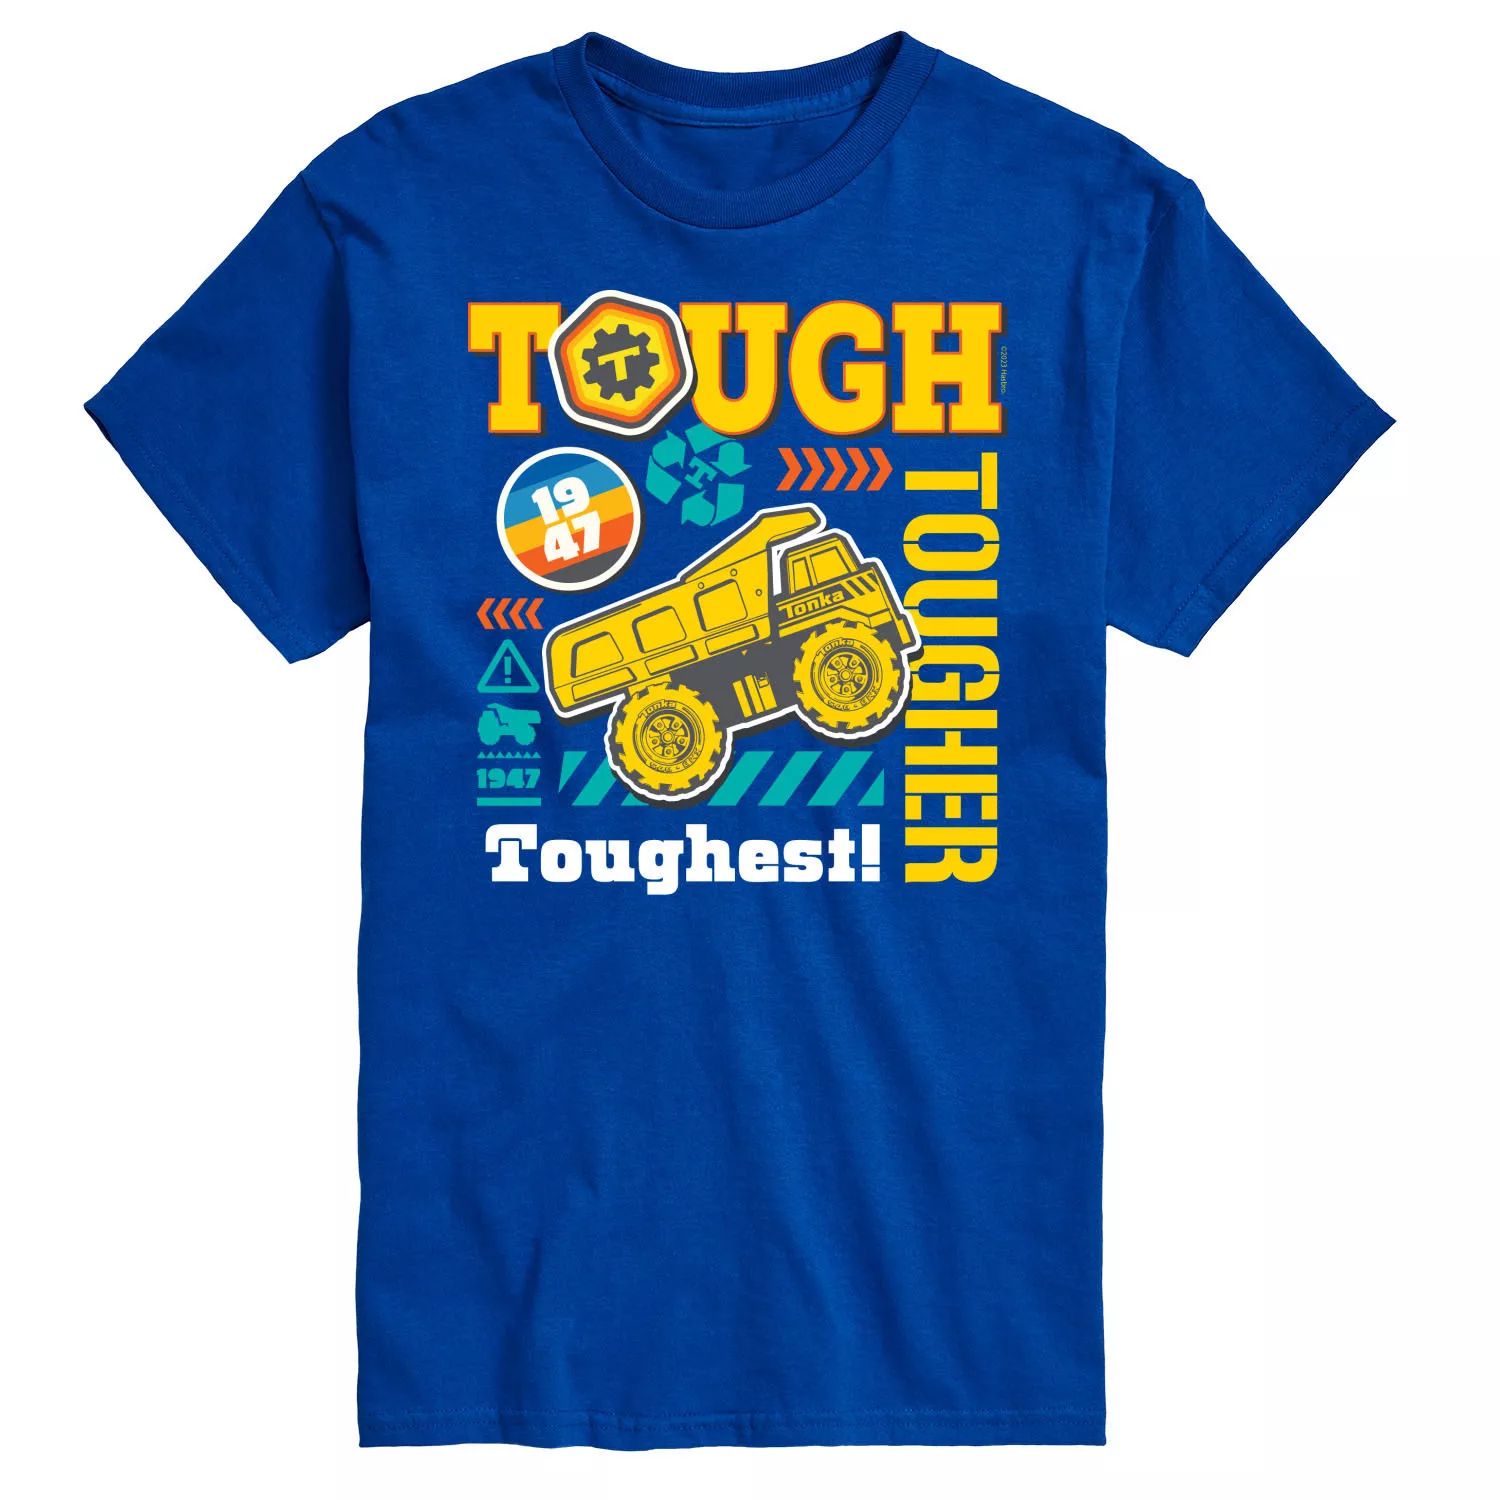 Футболка Big & Tall Tough Tougher Toughest с цветным рисунком Tonka, синий